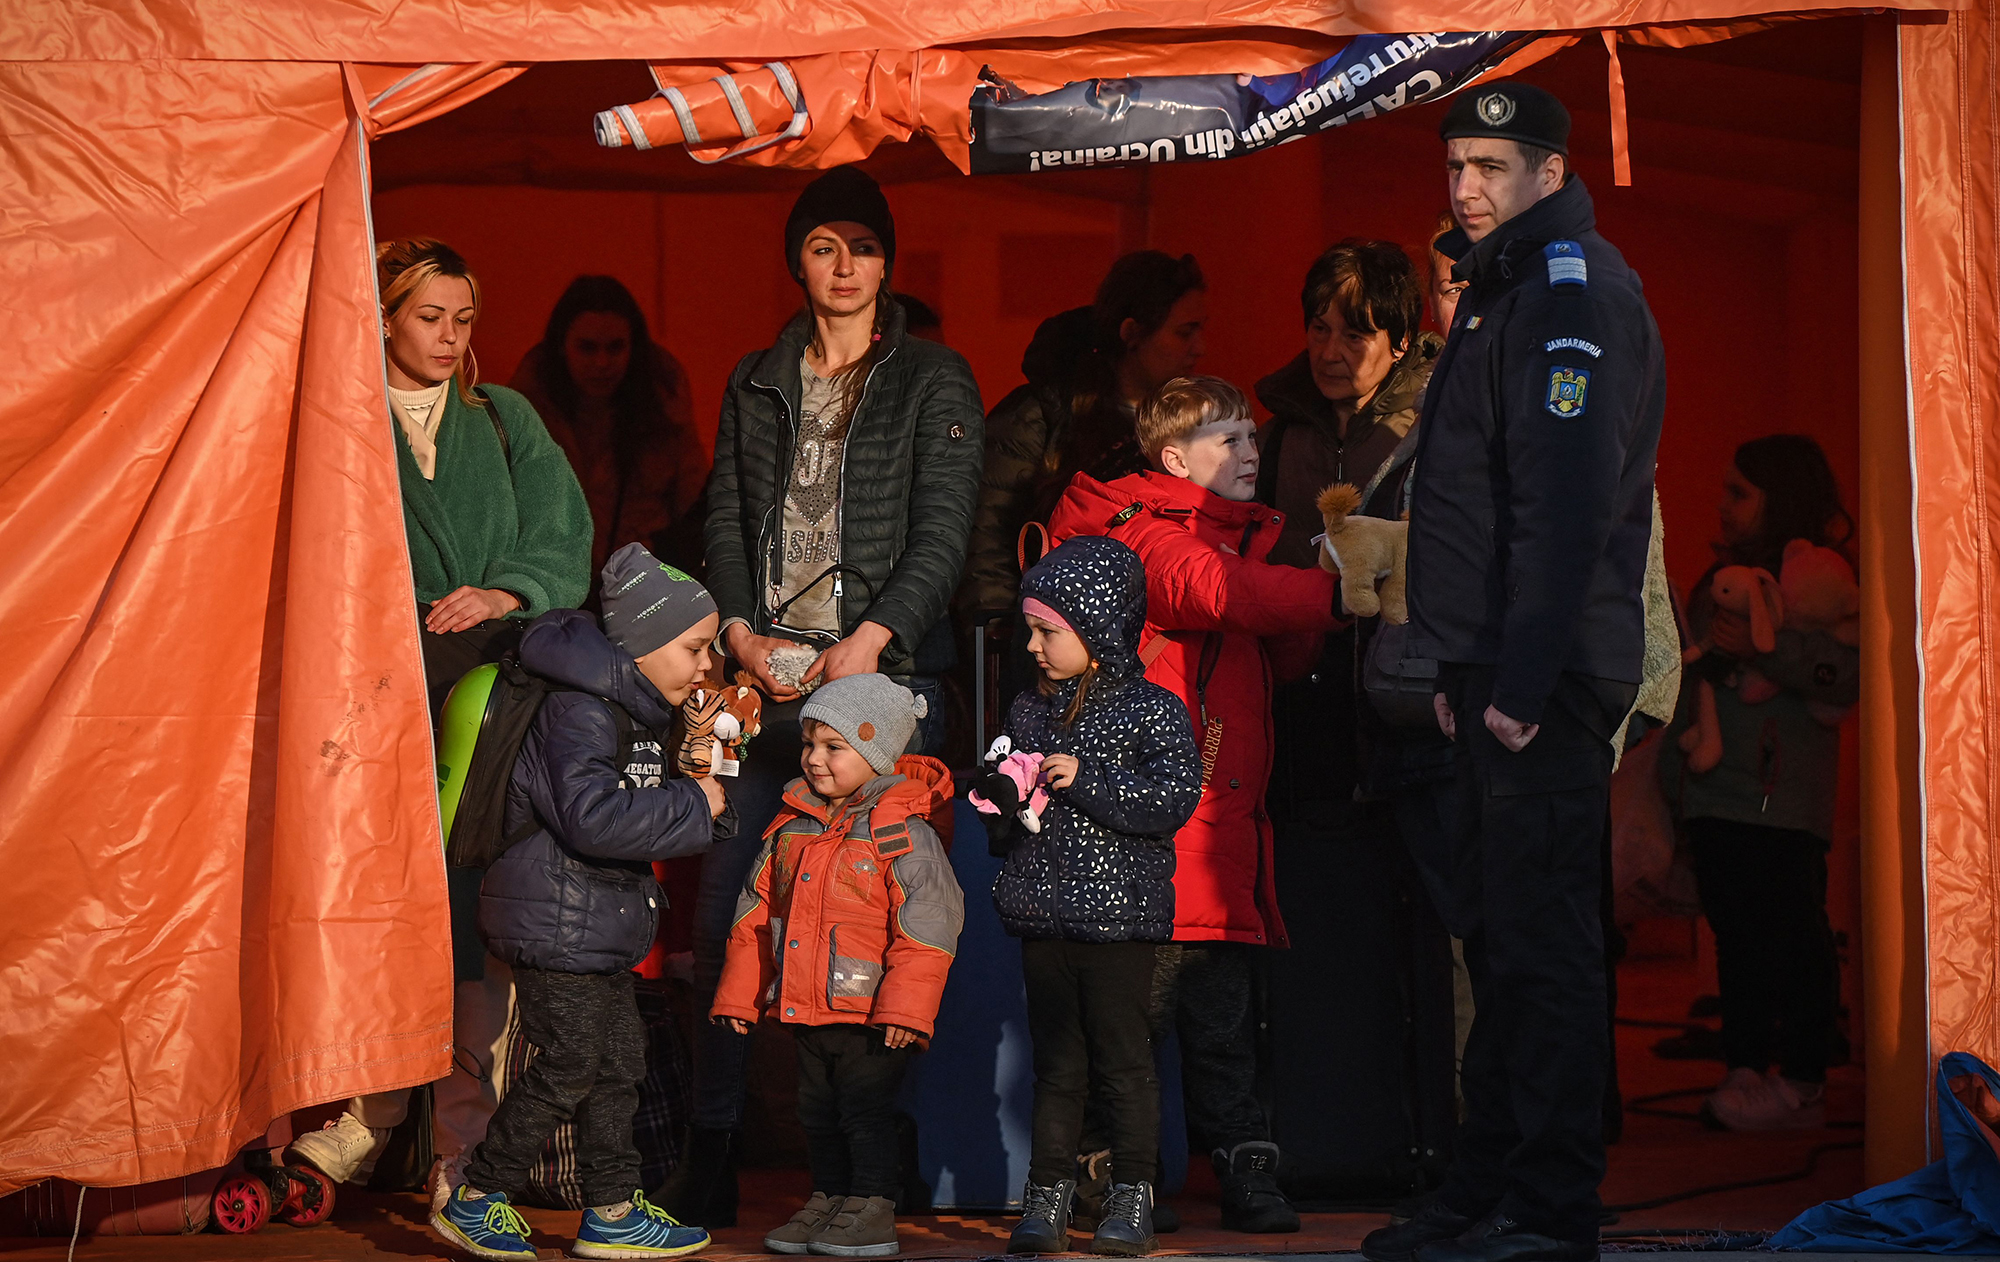 "Остаться может половина". Какие планы беженцев в Польше, Чехии и Румынии